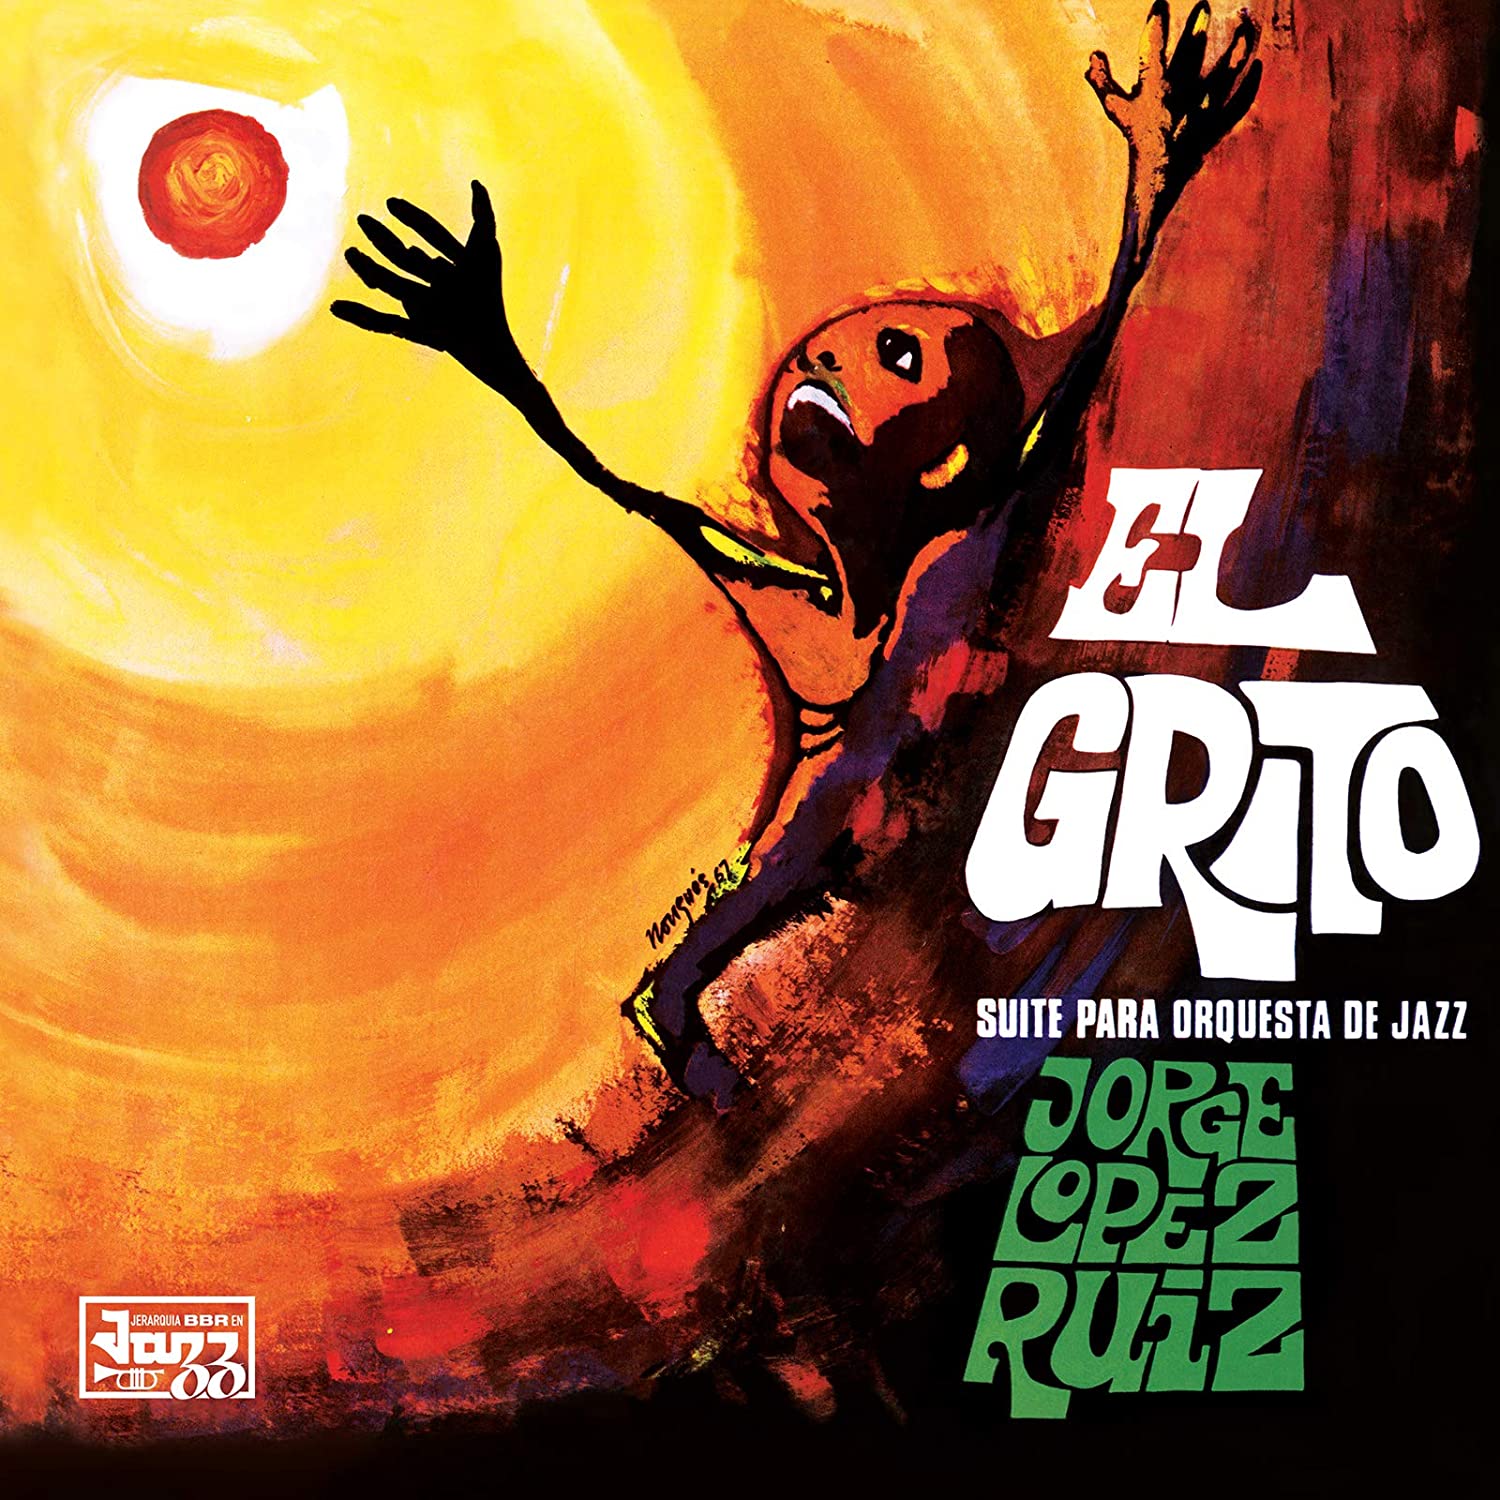 JORGE LOPEZ RUIZ - El Grito (Suite Para Orquesta De Jazz) - LP - Vinyl